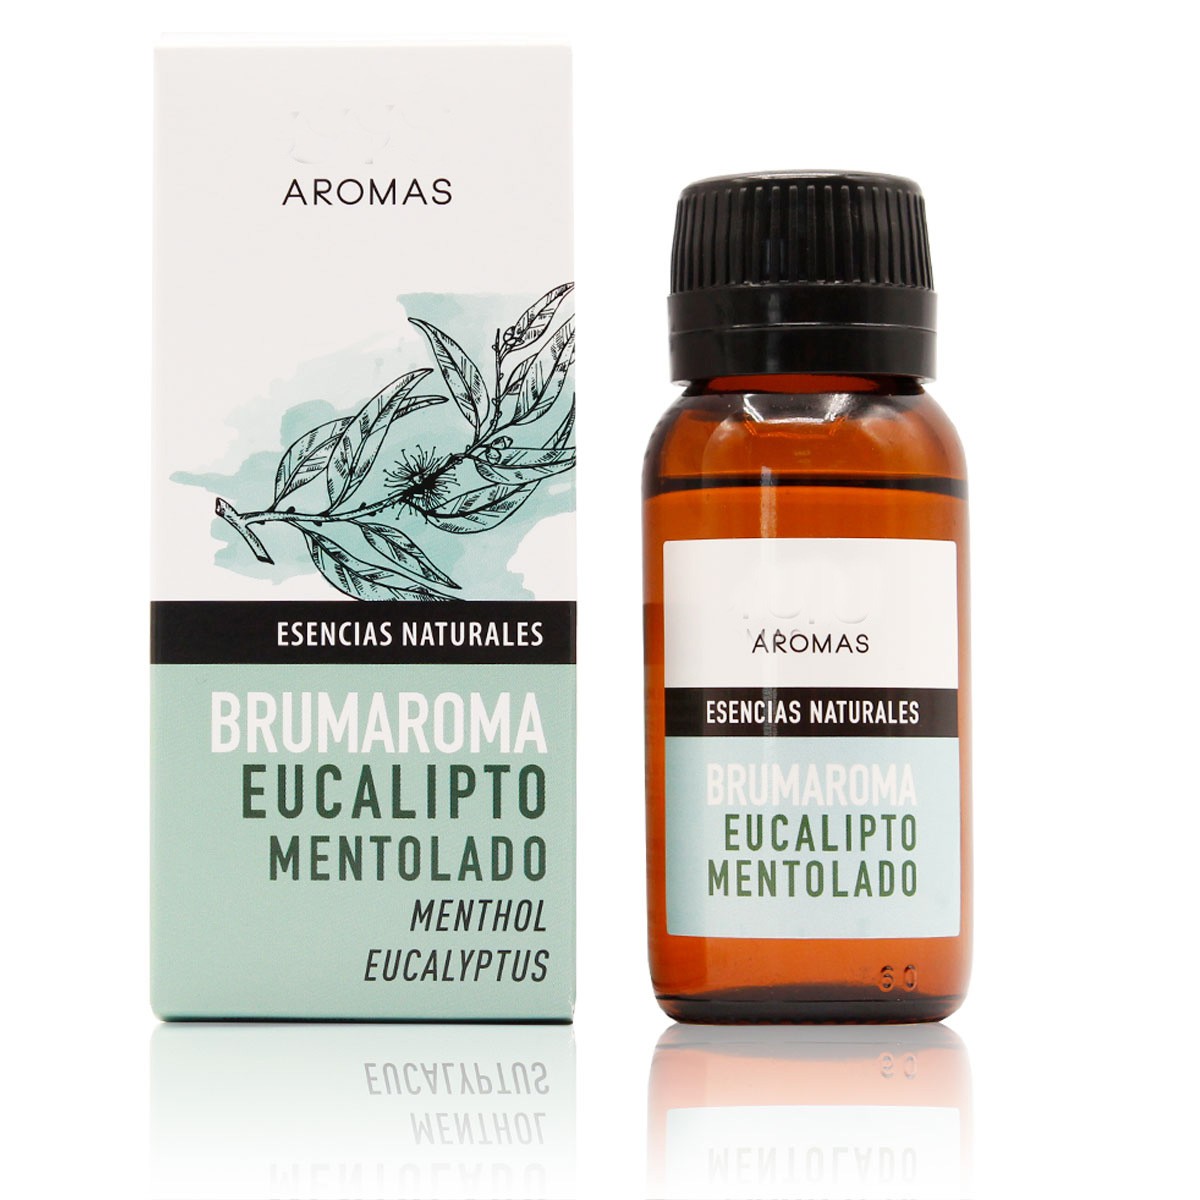 esencia humidificador brumaroma aceite esencial eucalipto humidificador  difusor bruma brumaroma